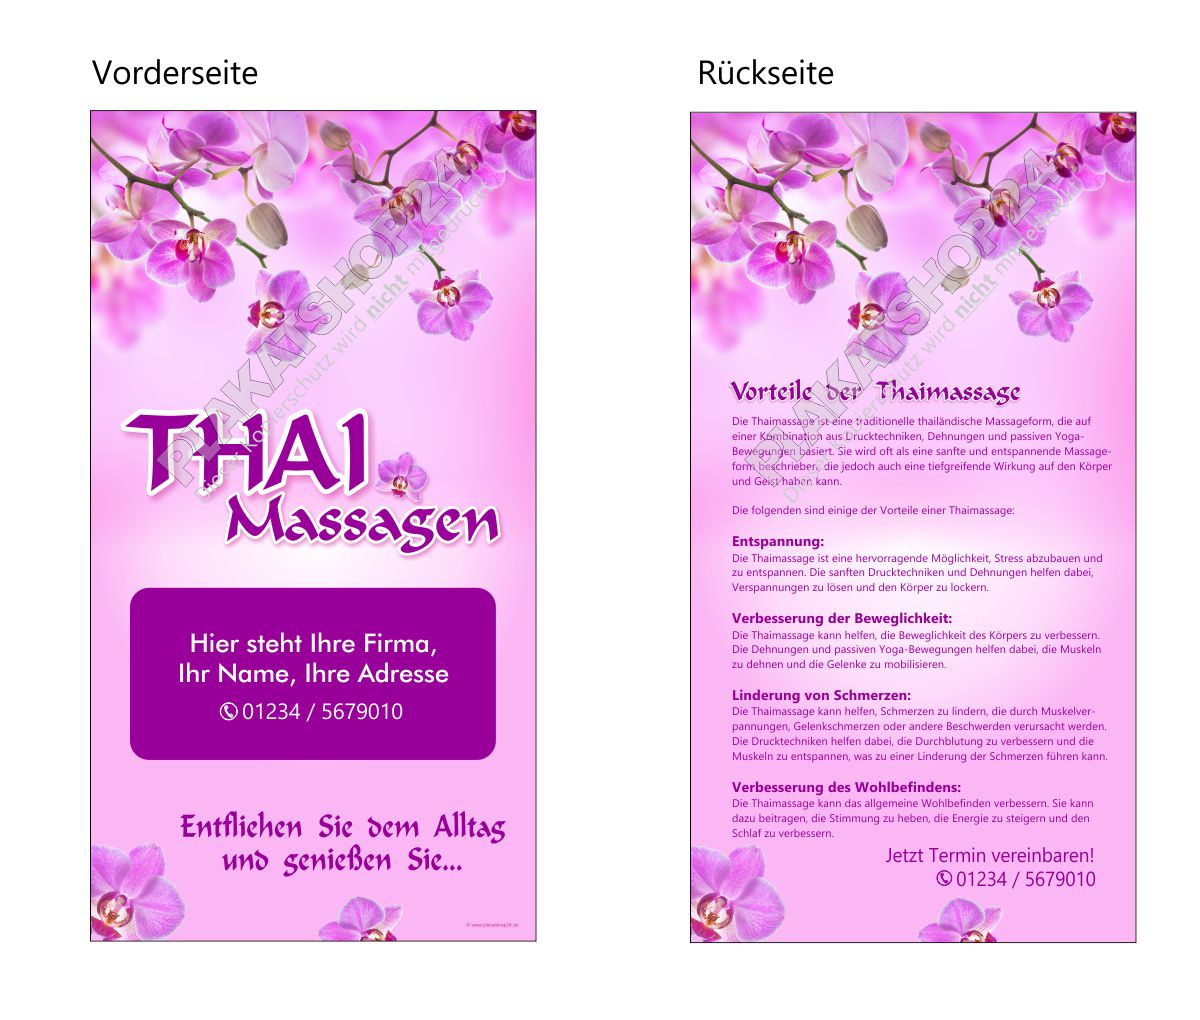 Thaimassage-Flyer zum günstigen Preis